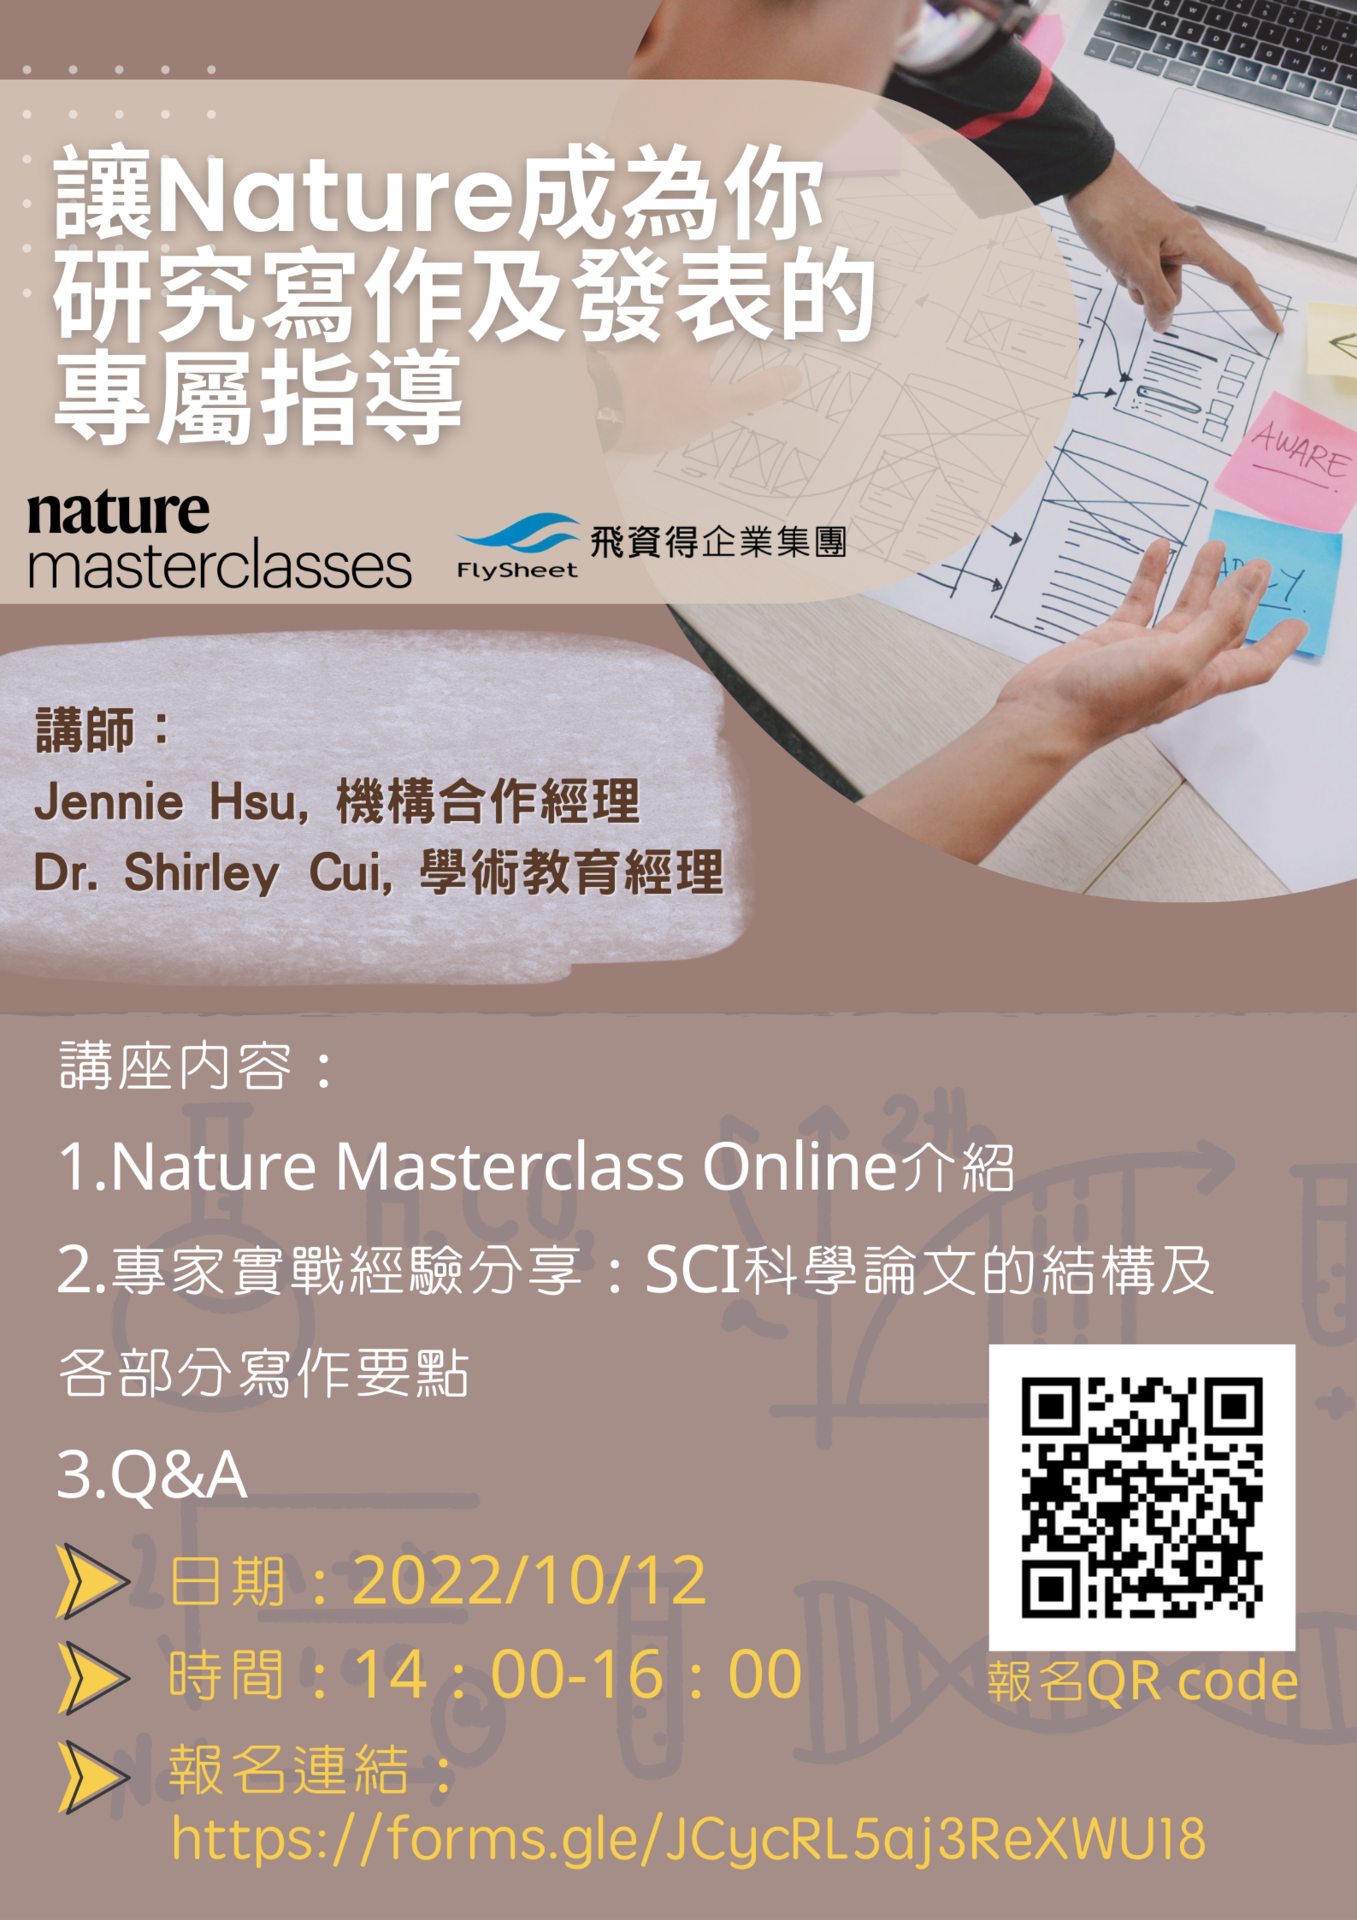 邀請您參與10/12(三) Nature出版社舉辦的線上講座＿Nature 大師課程《Nature Masterclass Online》